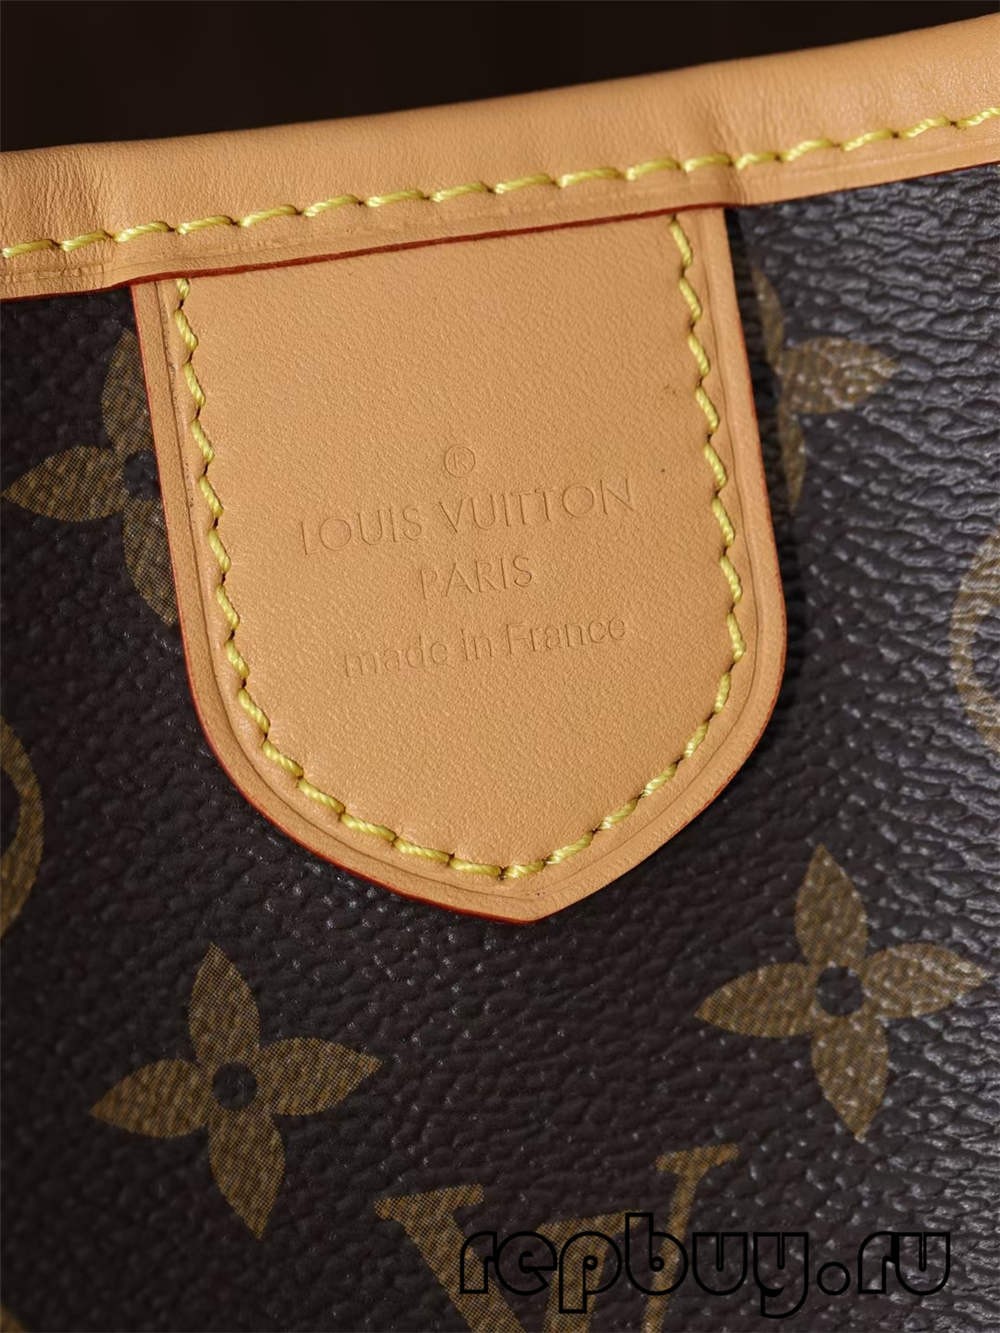 Louis Vuitton Re Fabrication תיקי העתק באיכות מעולה（2022 אחרונות）-האיכות הטובה ביותר מזויף לואי ויטון תיק חנות מקוונת, העתק תיק מעצב ru